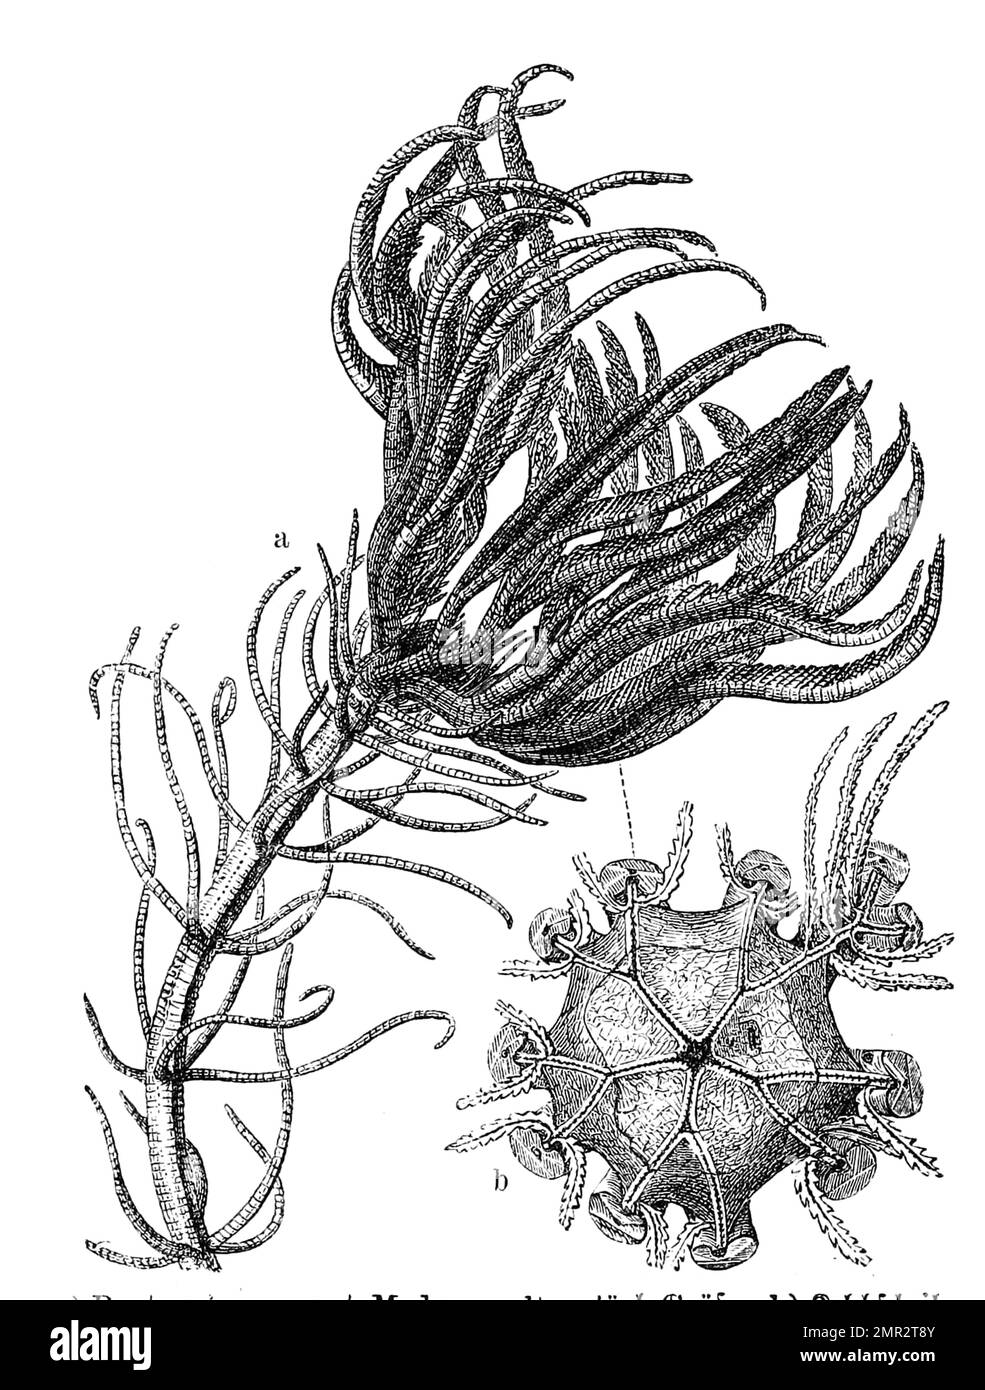 Pentacrinus caput medusae,zur Familie der Seesterne gehörend, Historisch, digital restaurierte Reproduktion von einer Vorlage aus dem 19. Jahrhundert Banque D'Images